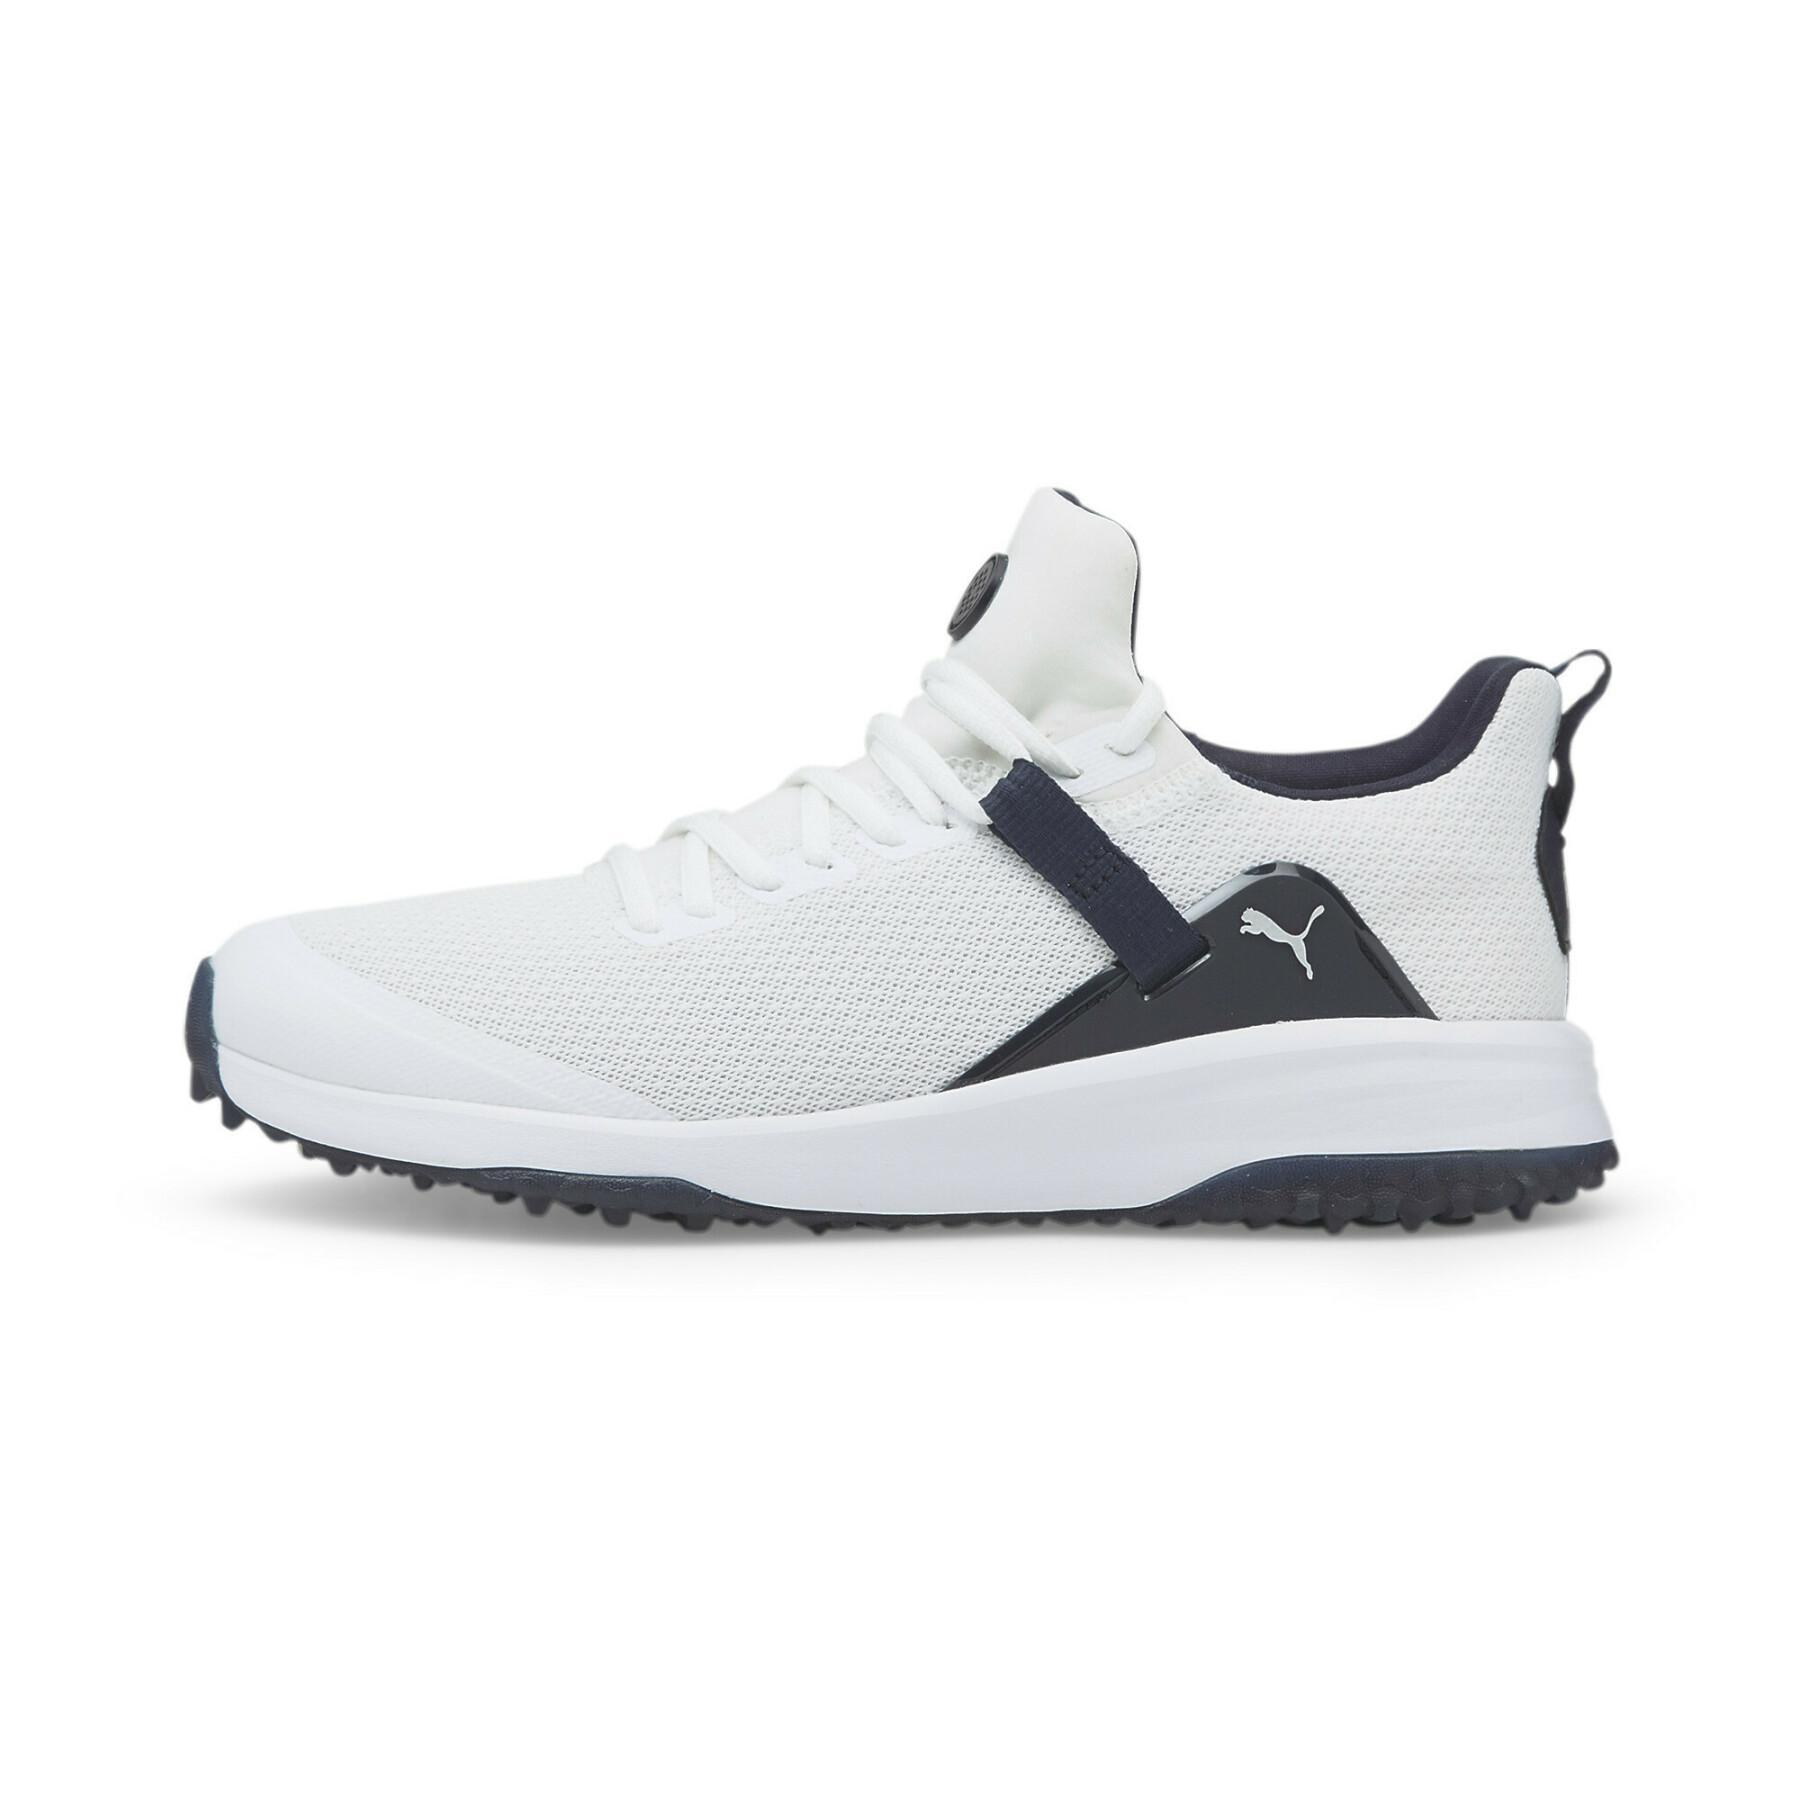 NEW Men's Puma Fusion Evo Spikeless Golf Shoes Puma White / Navy Blazer 11.5 M - image 1 of 3